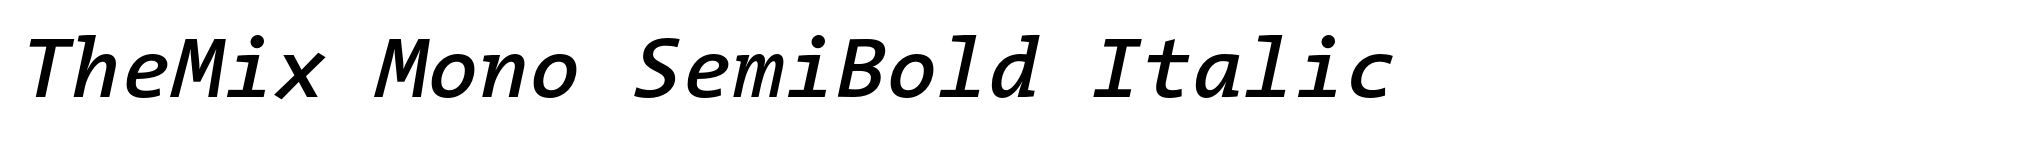 TheMix Mono SemiBold Italic image